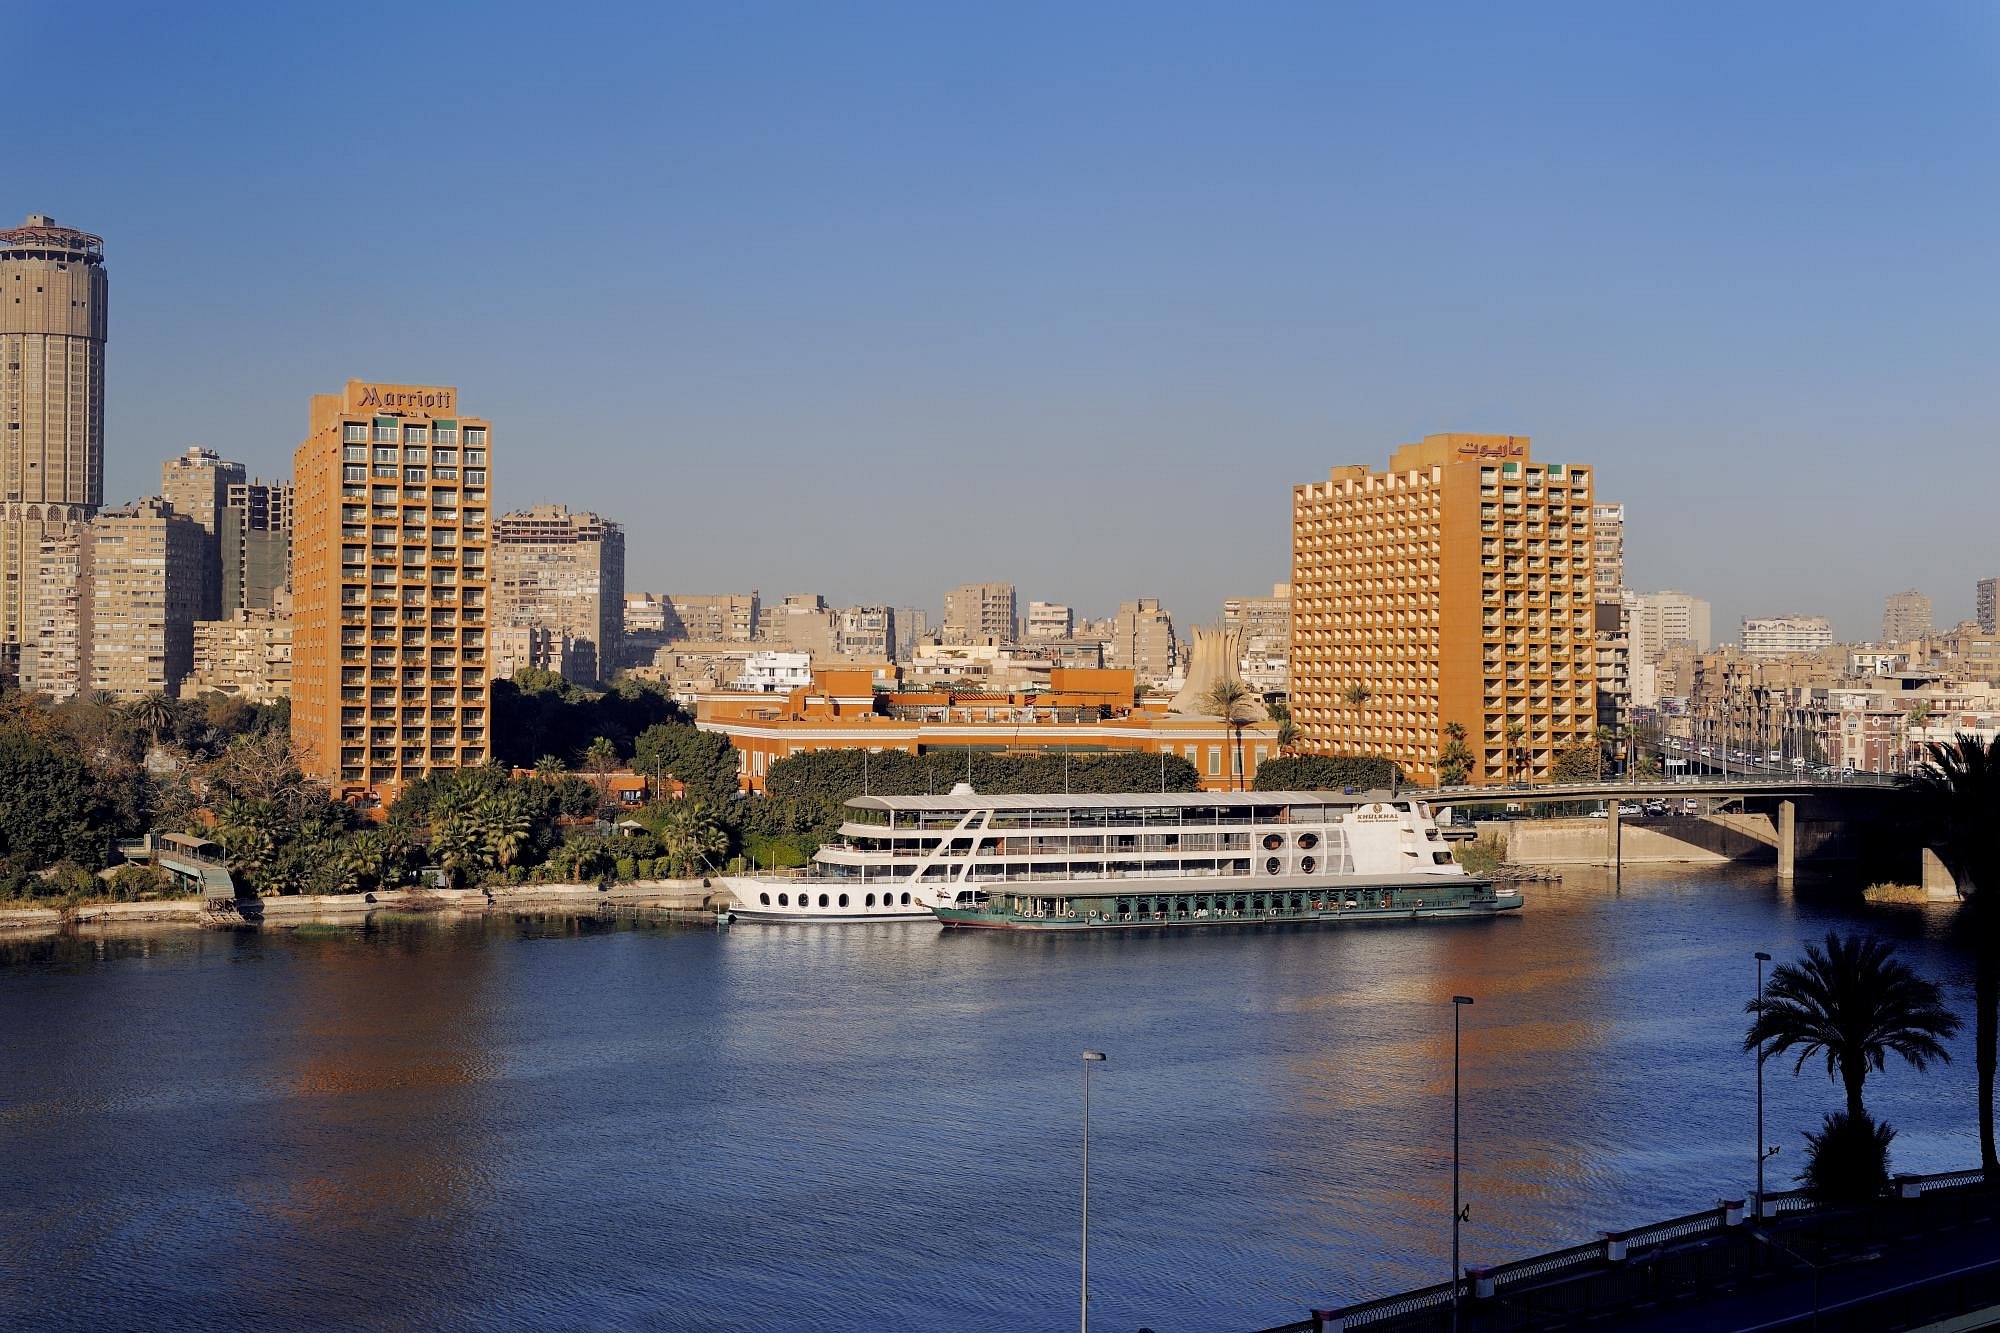 Cairo Marriott Hotel & Omar Khayyam Casino image